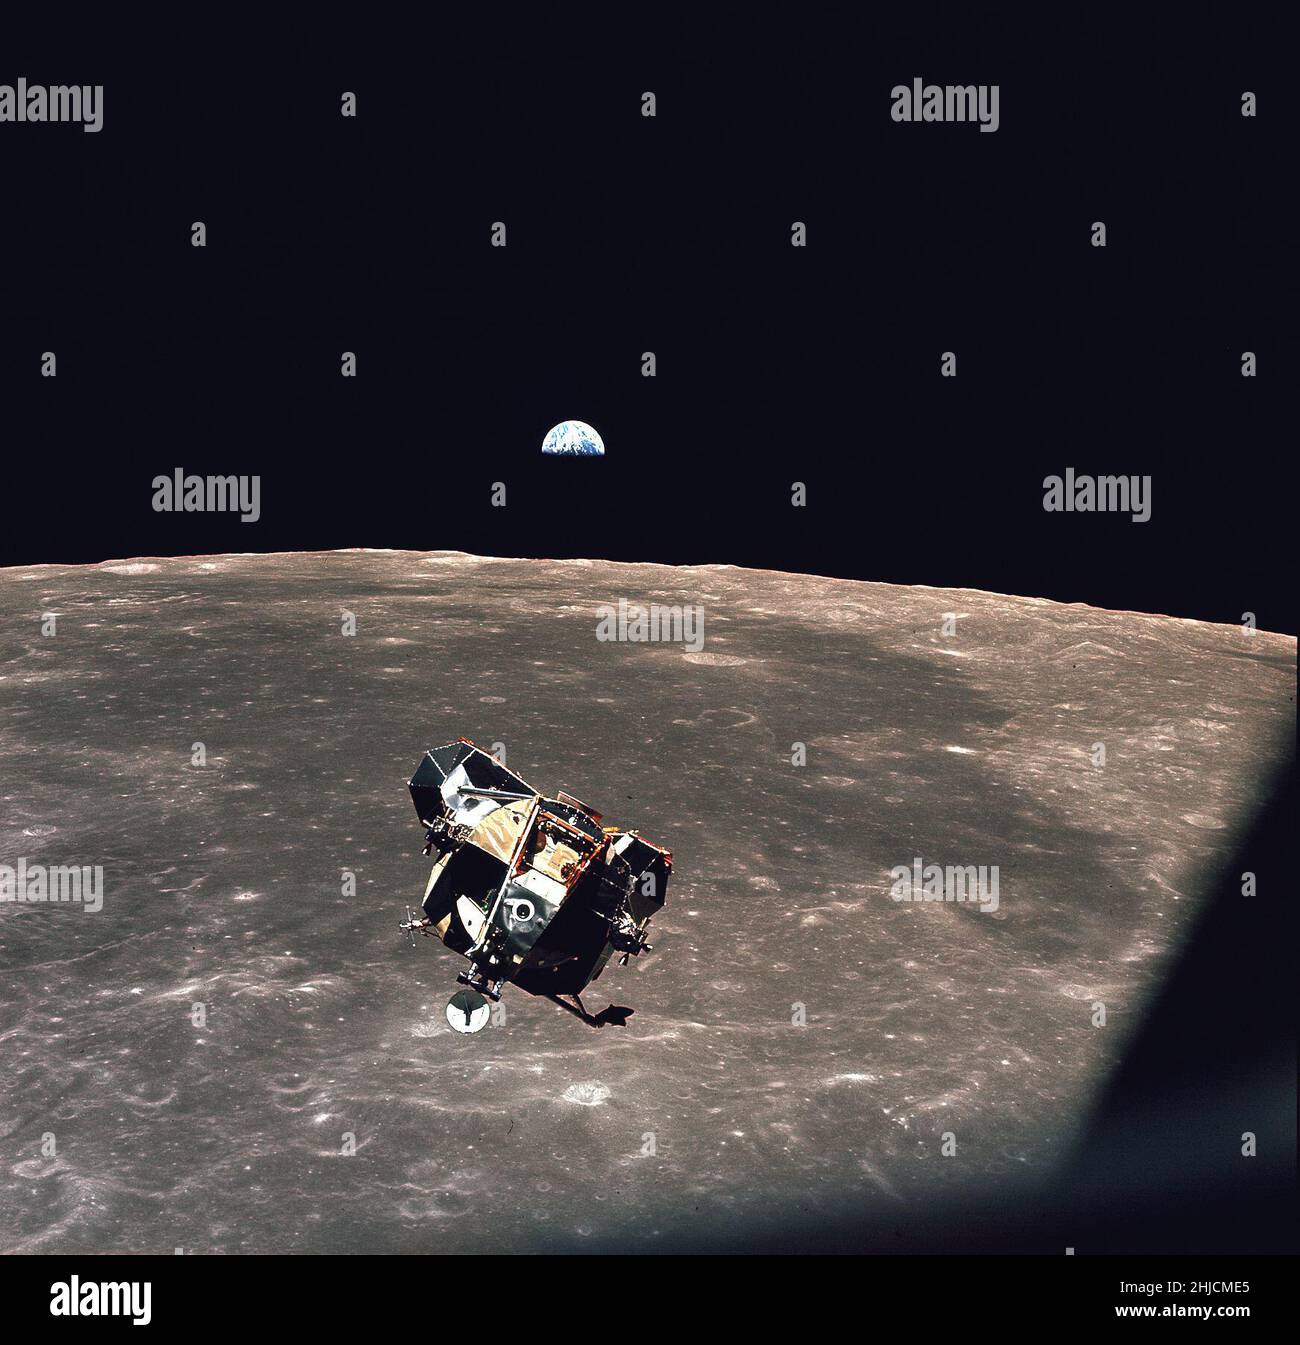 Vue du module lunaire Apollo 11 'Eagle' qui est revenu de la surface de la lune pour s'ancrer avec le module de commande 'Columbia'.Une zone de jument lisse est visible sur la Lune en dessous et une Terre à moitié illuminée est suspendue au-dessus de l'horizon.La phase d'ascension du module lunaire était d'environ 4 mètres.Michael Collins, pilote du module de commande, a pris cette photo juste avant de se connecter à 21:34:00 UT (5:34 HAE) 21 juillet 1969. Banque D'Images